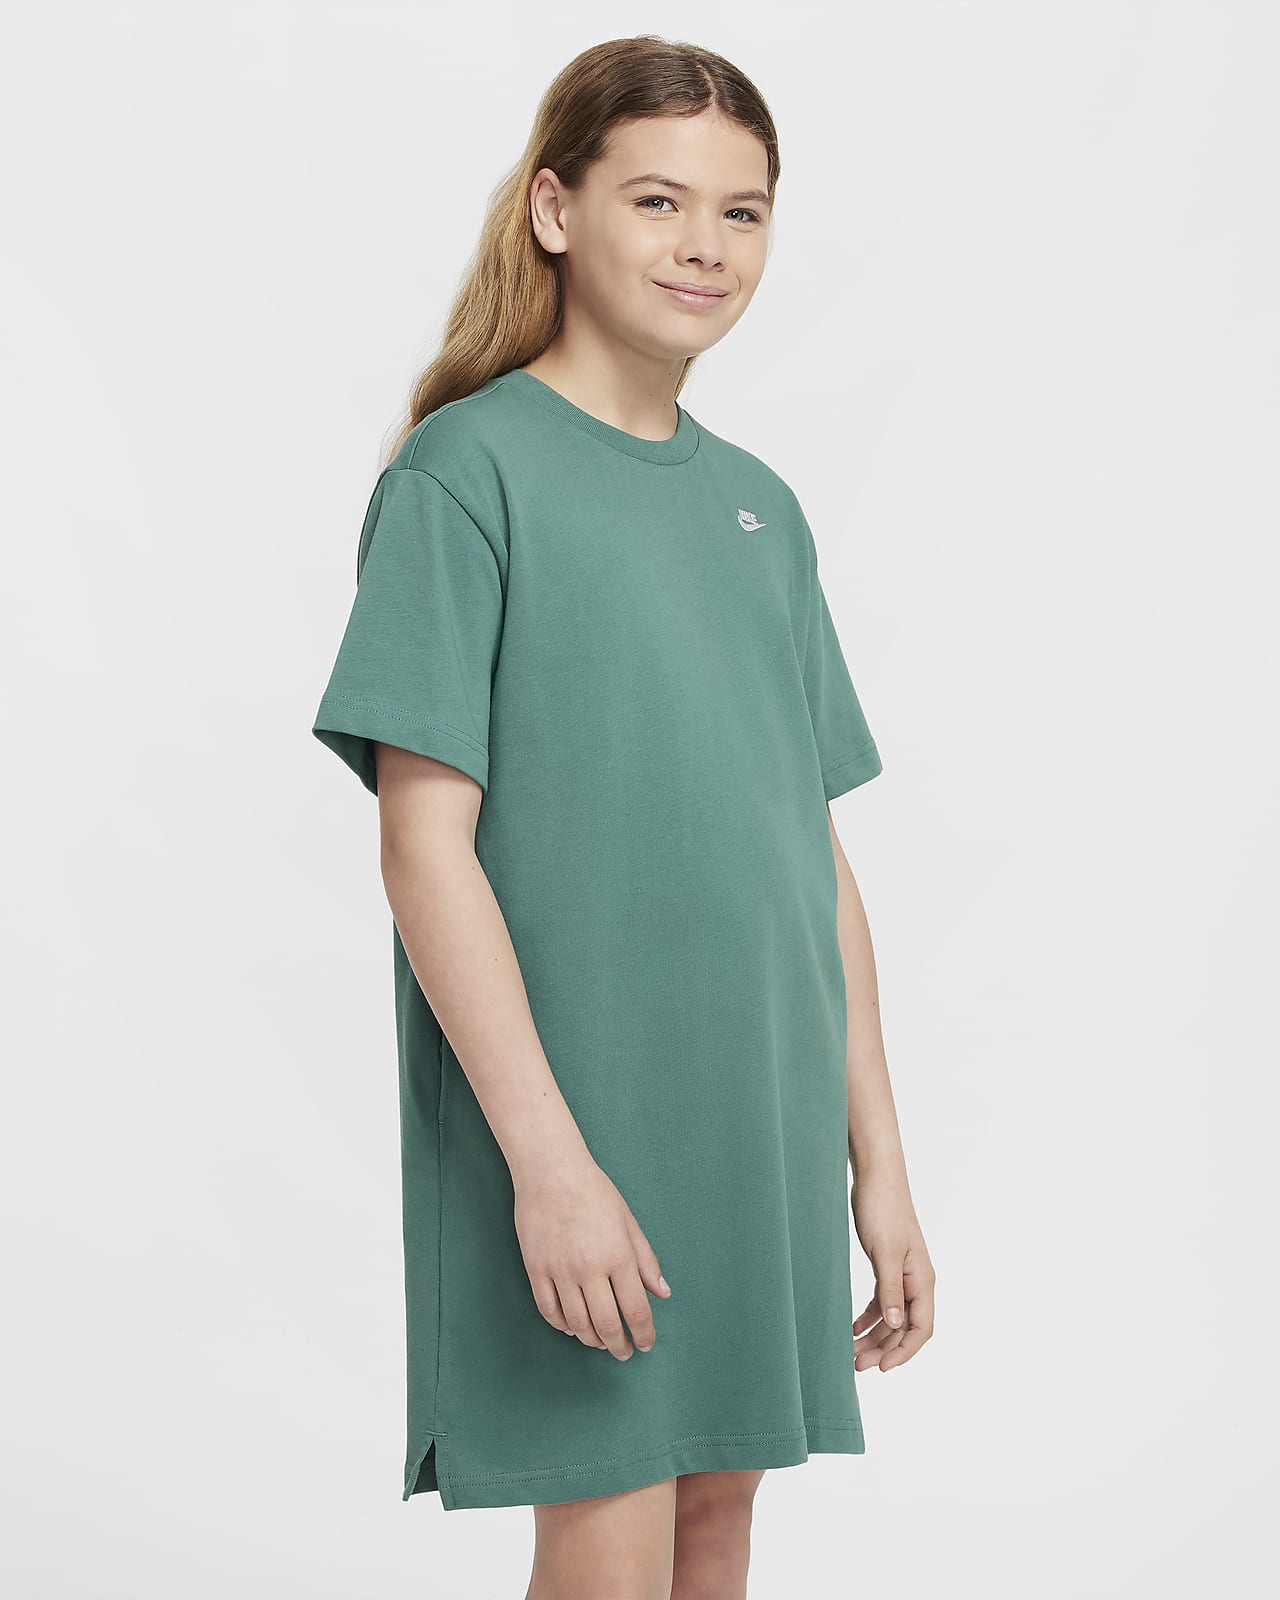 Μπλούζα-φόρεμα Nike Sportswear για μεγάλα κορίτσια